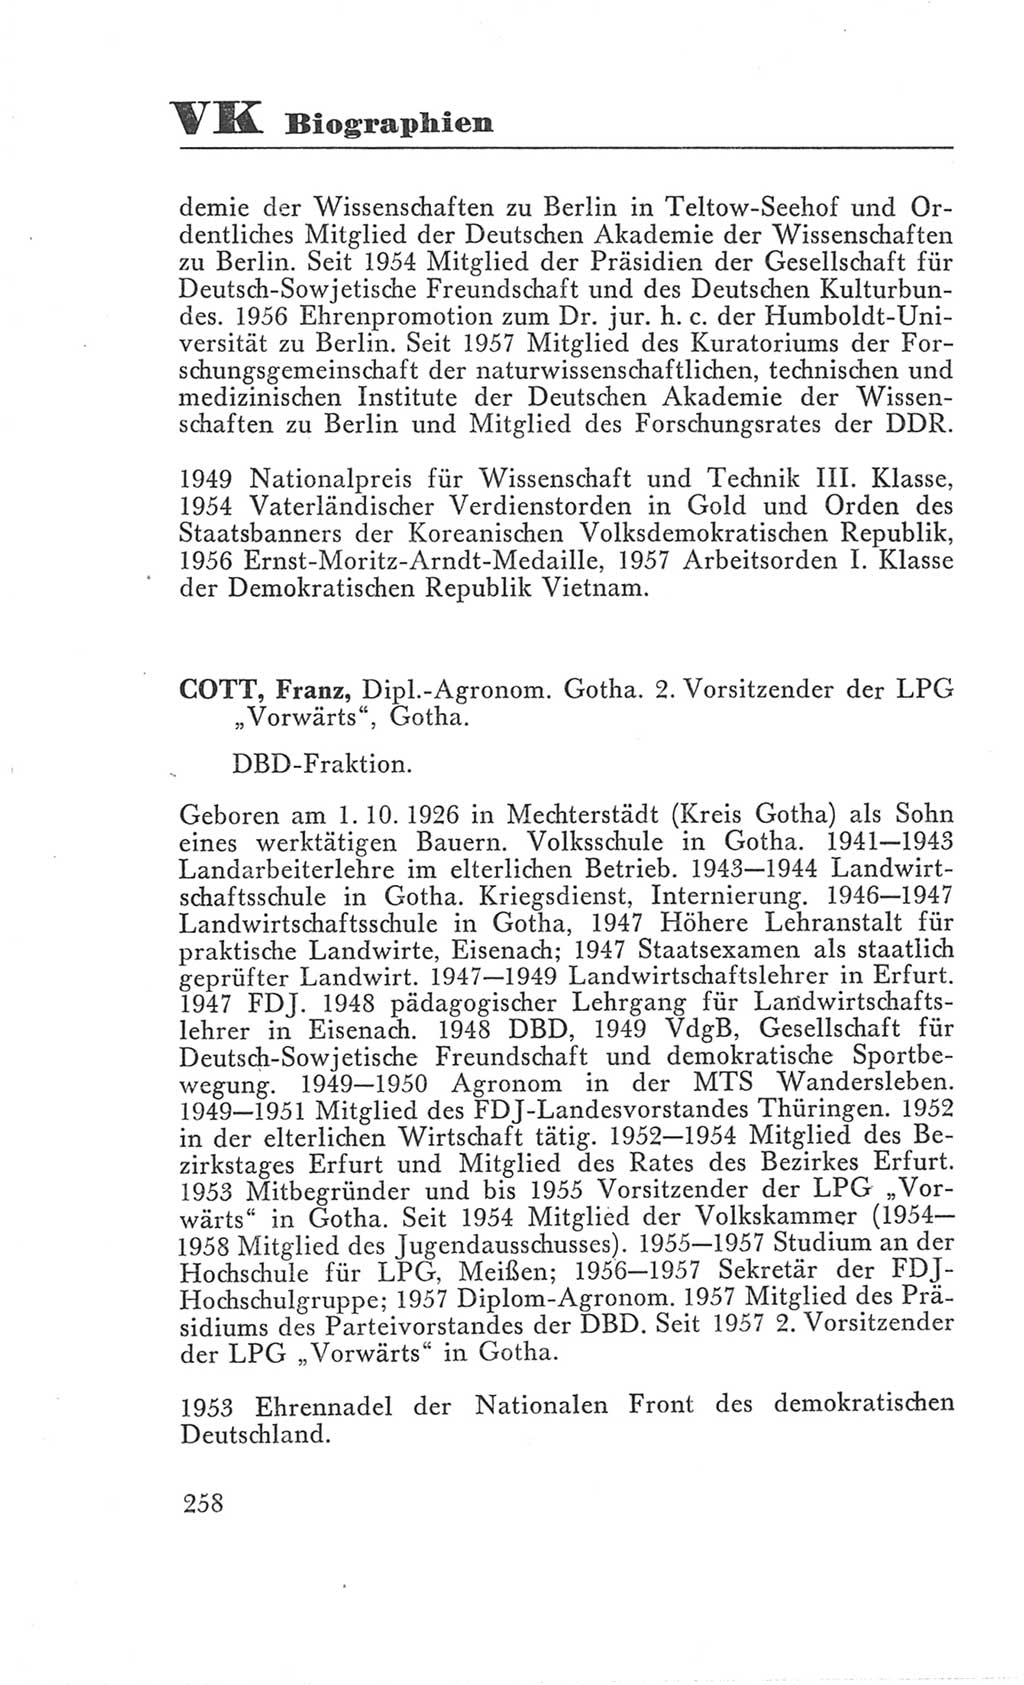 Handbuch der Volkskammer (VK) der Deutschen Demokratischen Republik (DDR), 3. Wahlperiode 1958-1963, Seite 258 (Hdb. VK. DDR 3. WP. 1958-1963, S. 258)